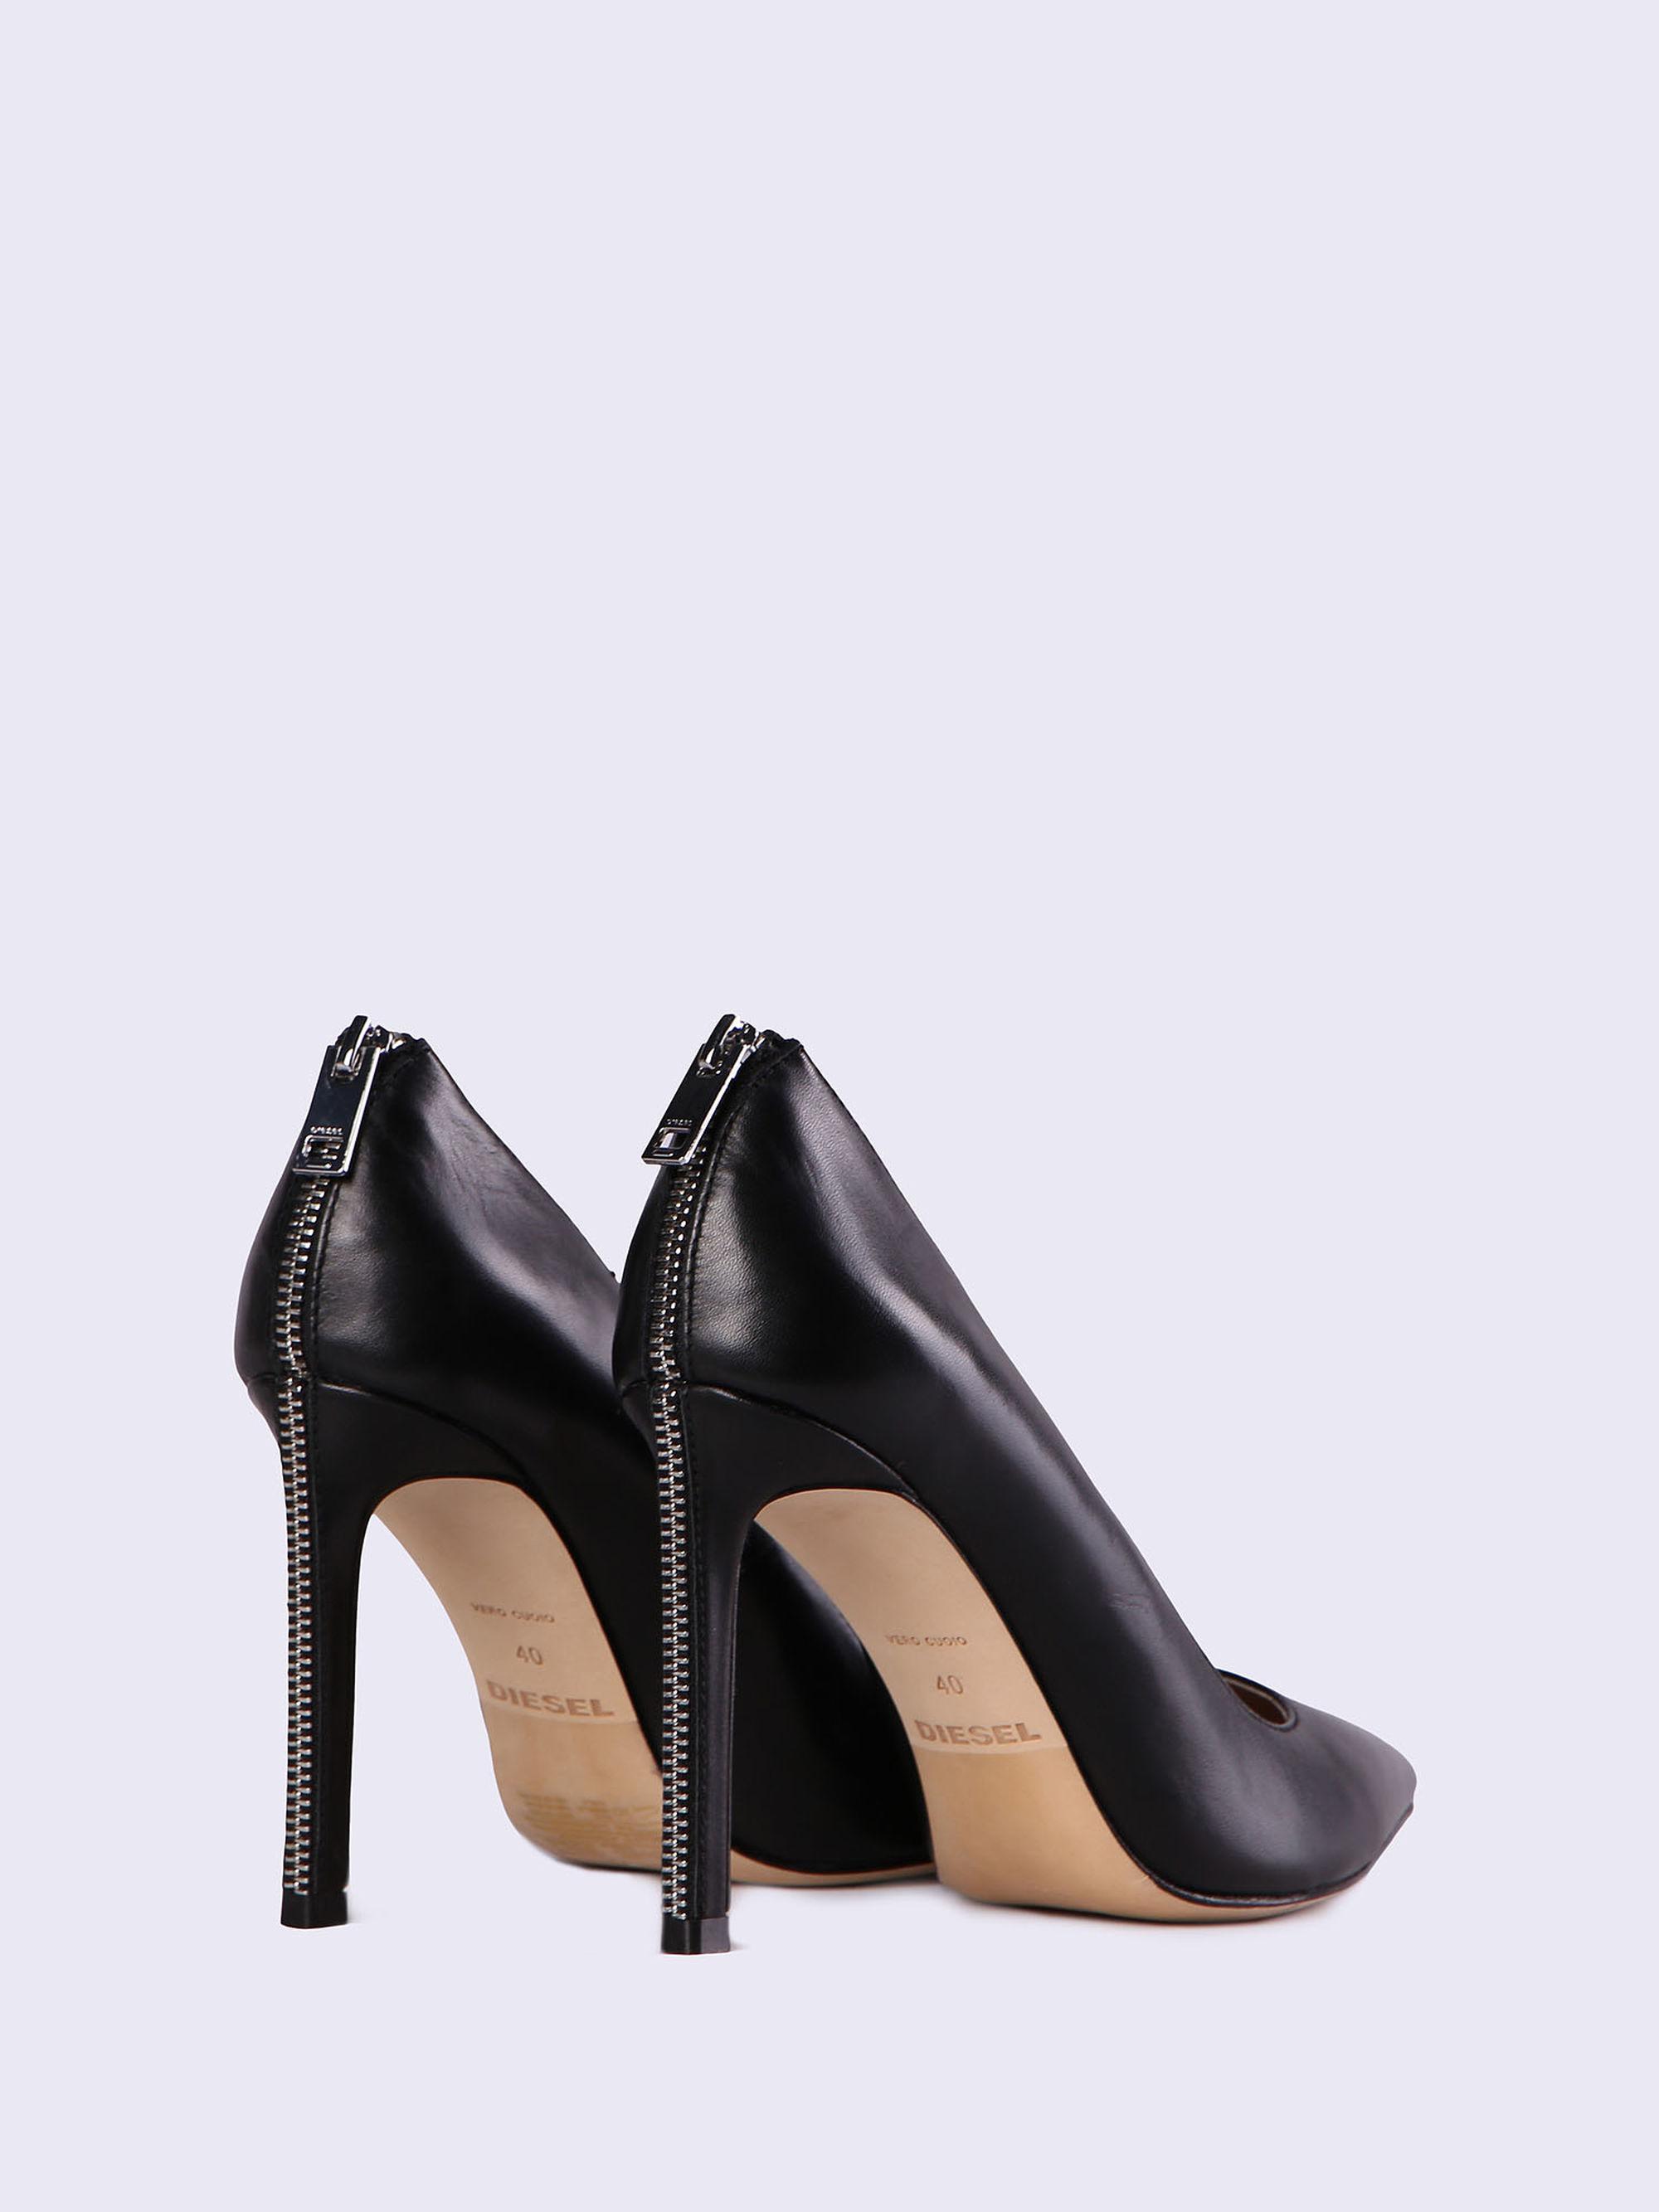 DIESEL High-heel Pumps In Sleek Leather in Black - Lyst